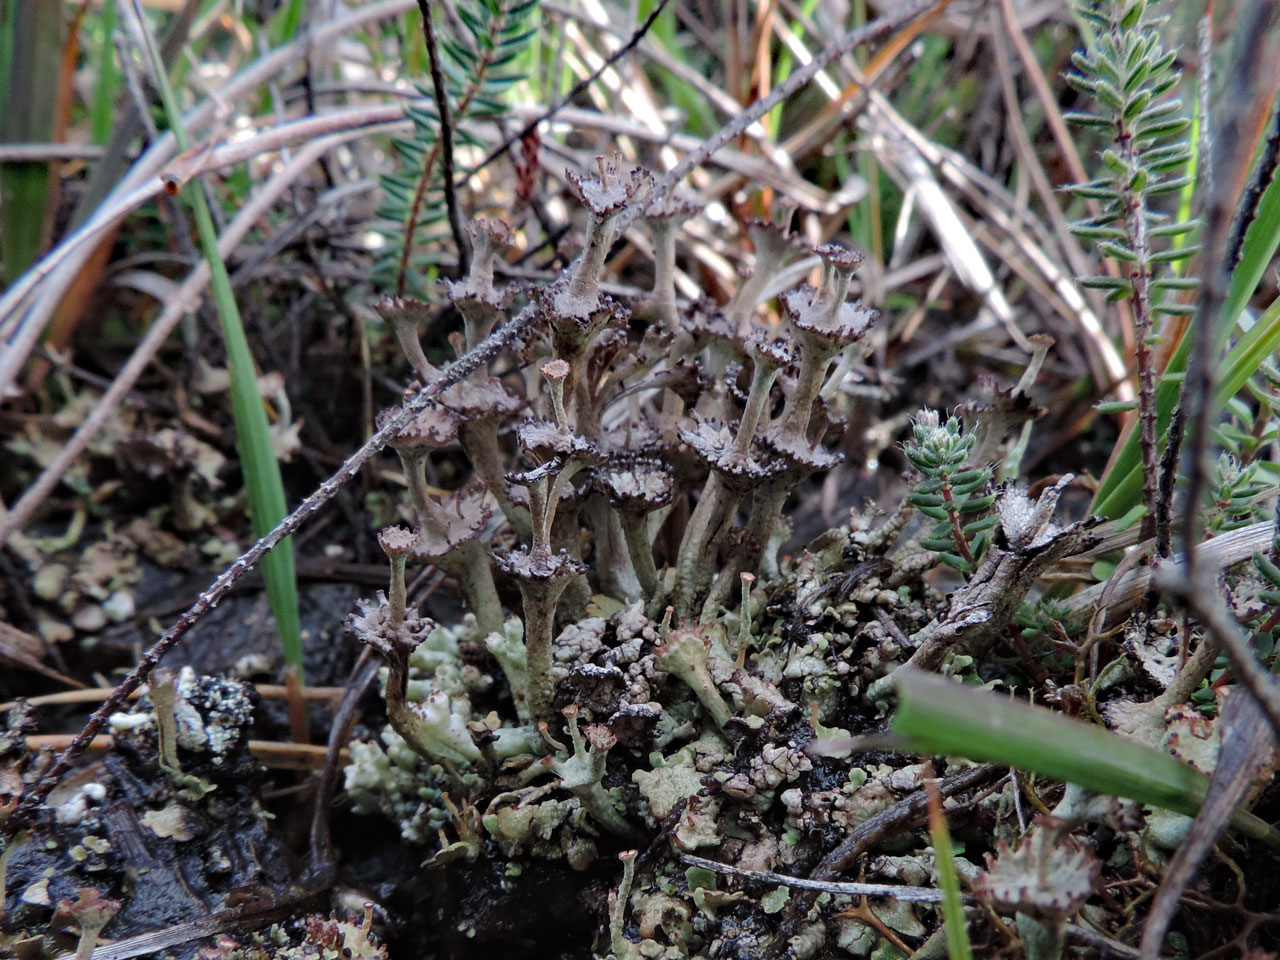 Cladonia verticillata, Strodgemoor, New Forest